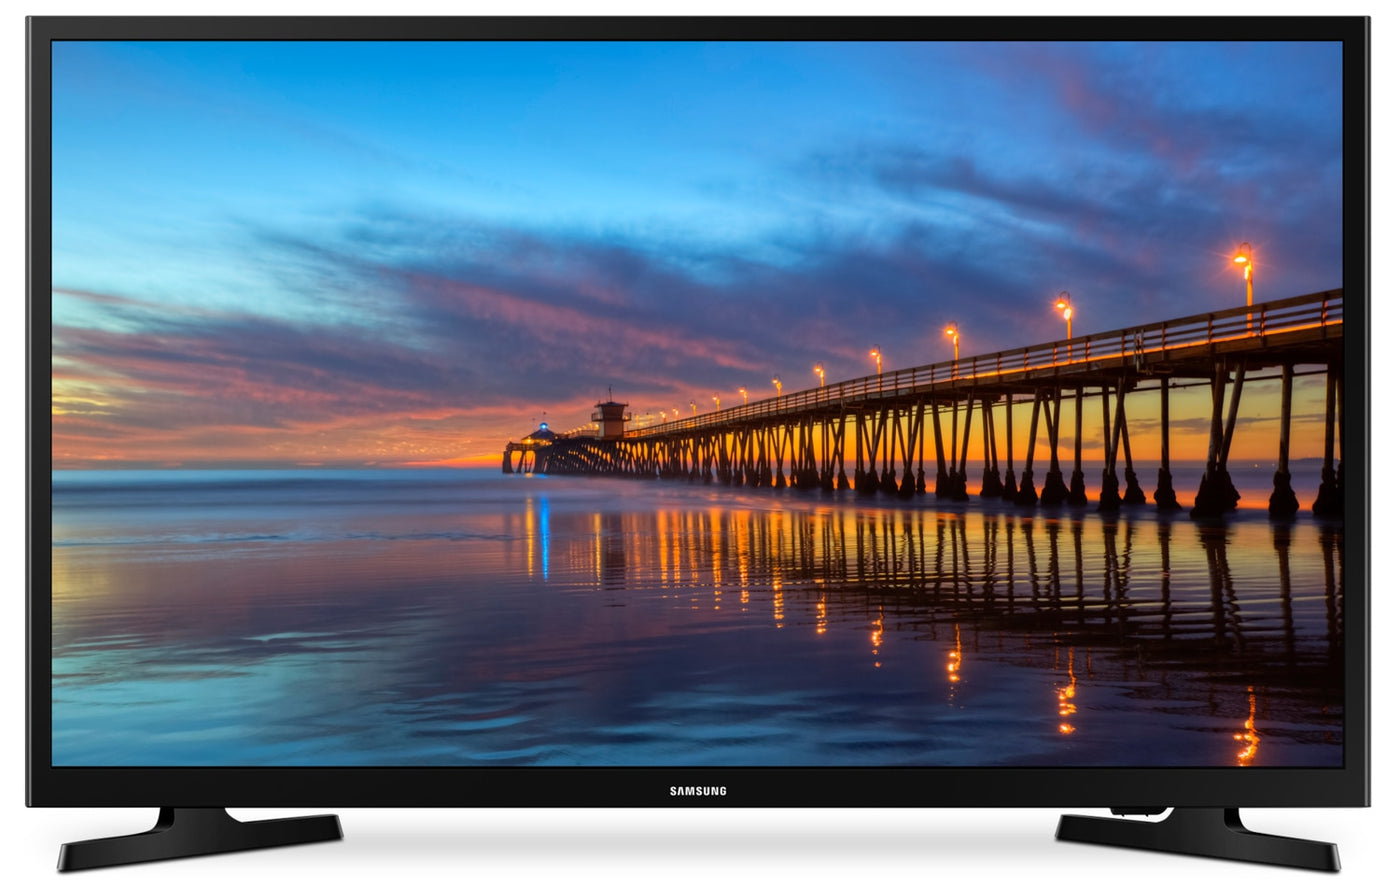 Télévision Samsung 32 pouces Série 5 Smart Tv